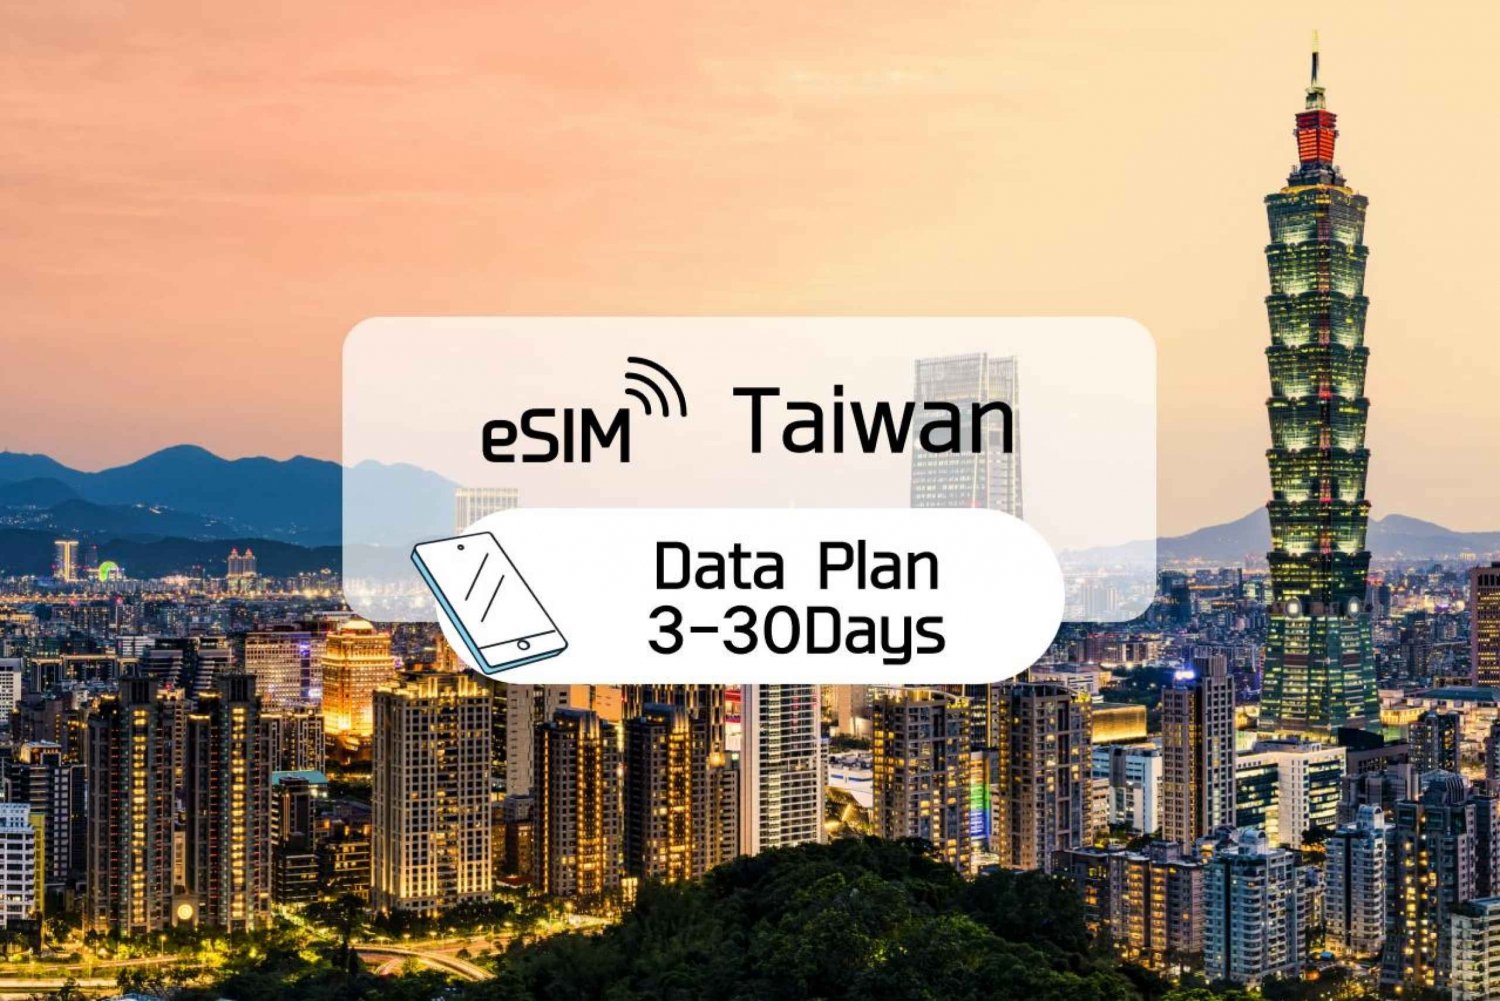 Taiwan: 5G eSim Roaming Mobile Data Day Plan (3-30 Days)